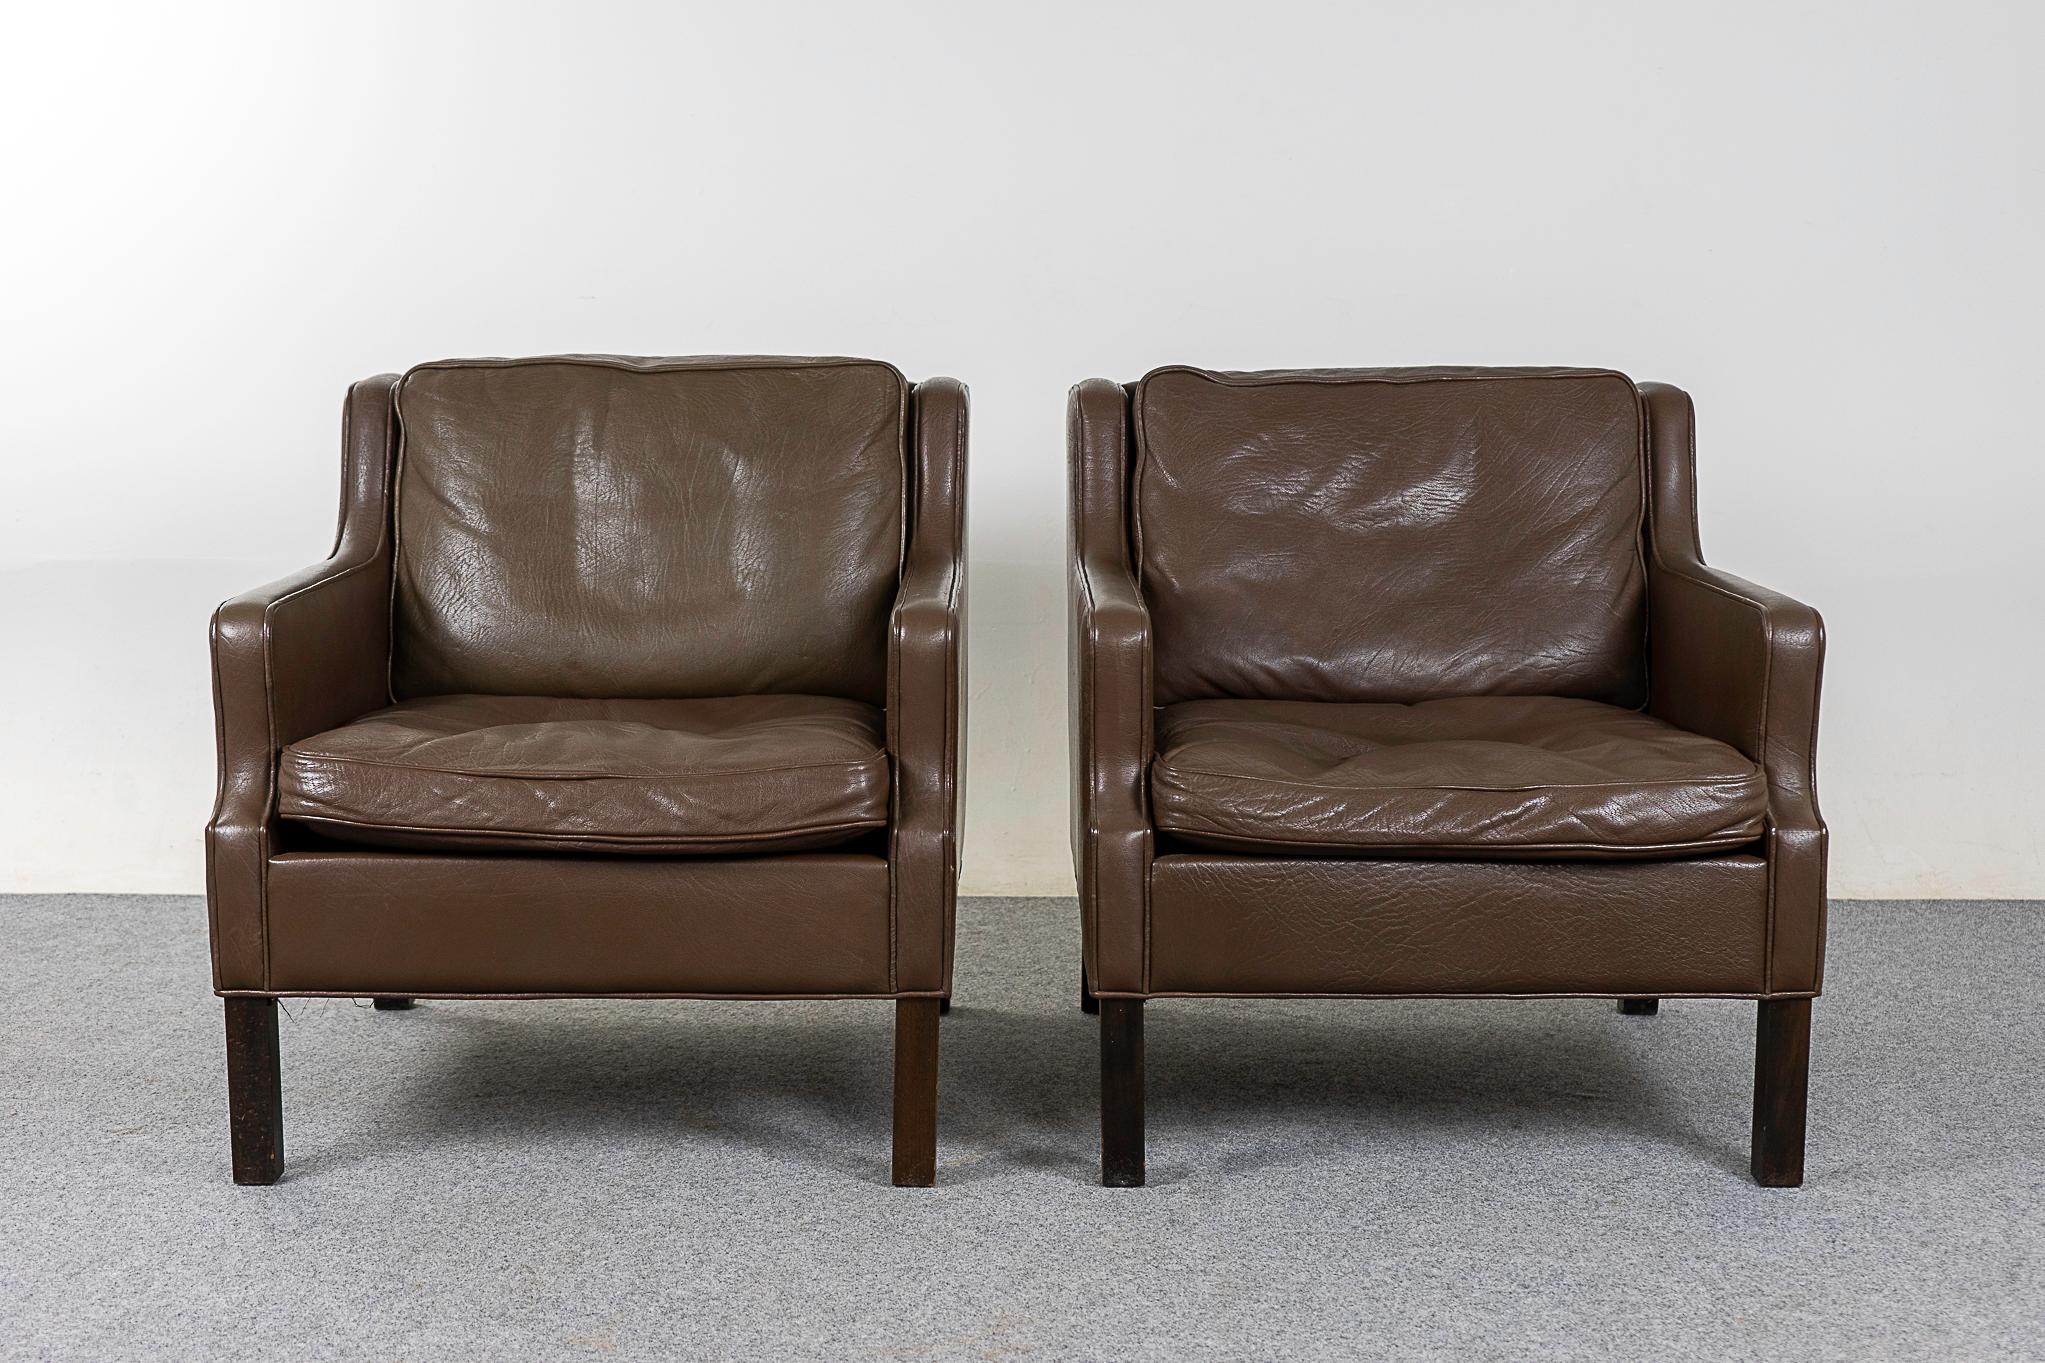 Loungesessel aus Leder aus der Mitte des Jahrhunderts, ca. 1960er Jahre. Klare, moderne Linien und original braunes Leder machen diese Sessel zu einer großartigen Ergänzung für jedes Wohnzimmer! 

Bitte erkundigen Sie sich nach den Tarifen für Fern-